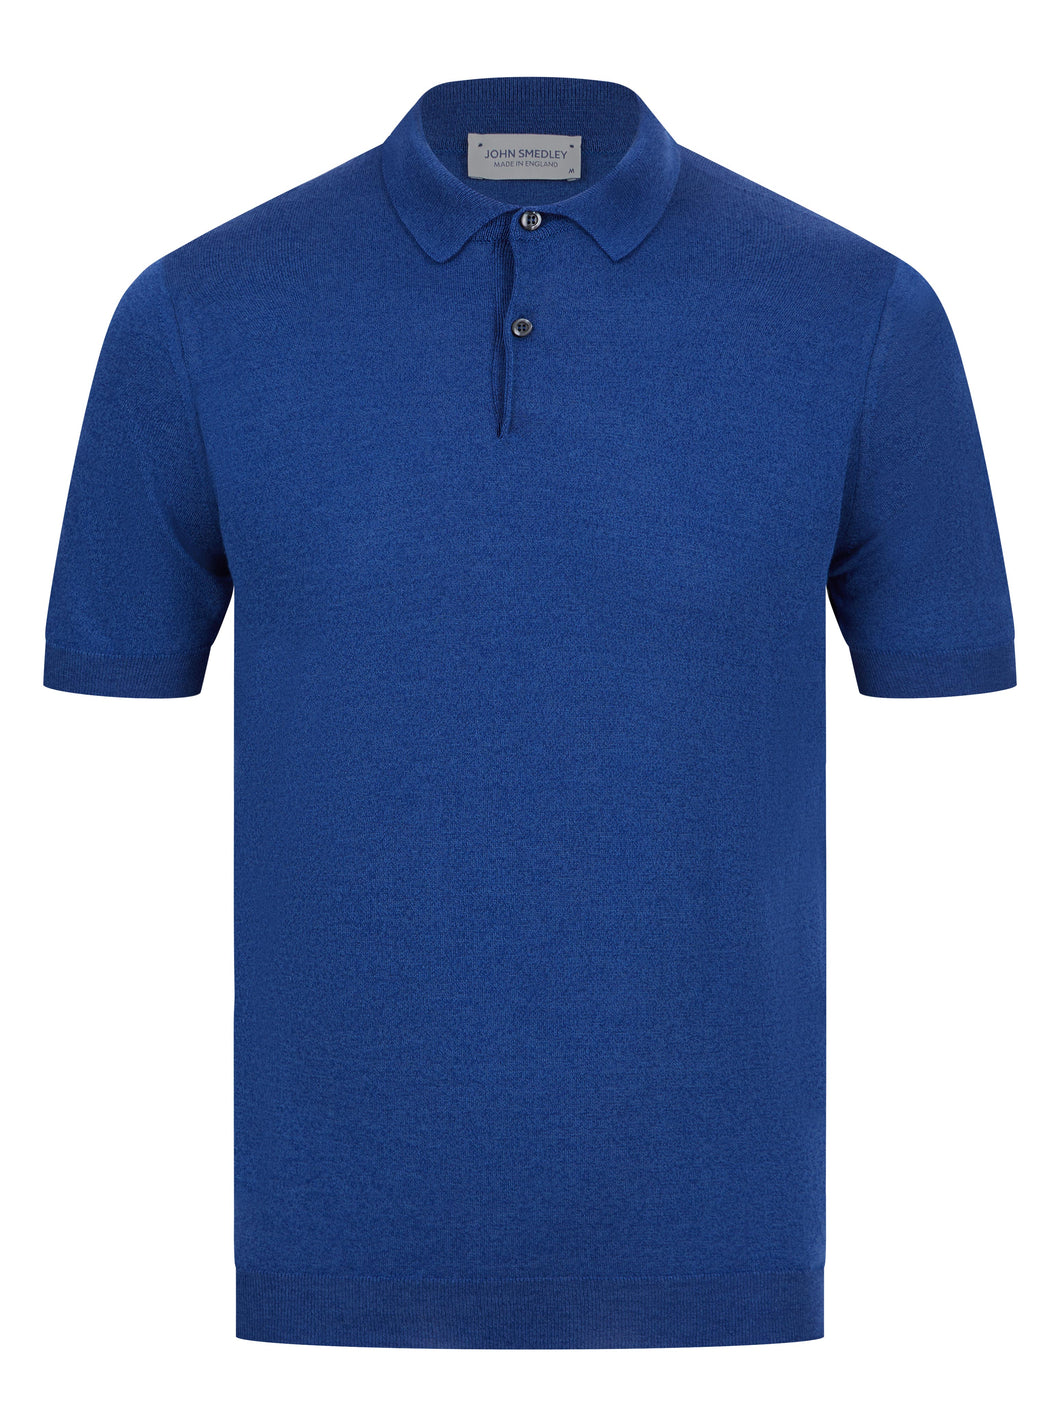 John Smedley CPayton Polo Shirt River Blue